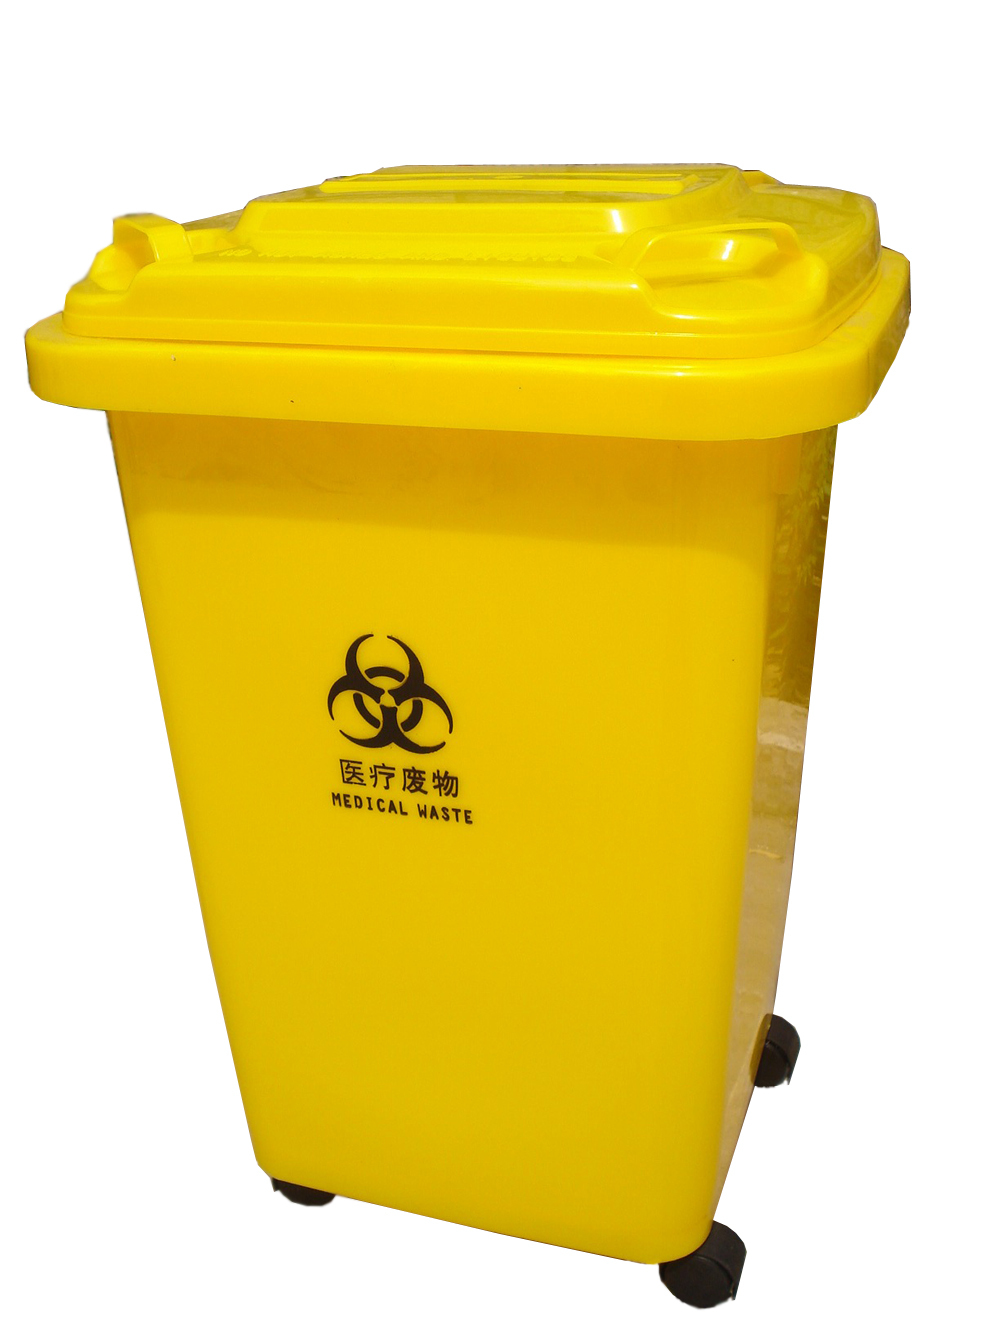 黄色医物桶50升 医院用垃圾桶塑料垃圾桶 送4个万象轮 环保新料